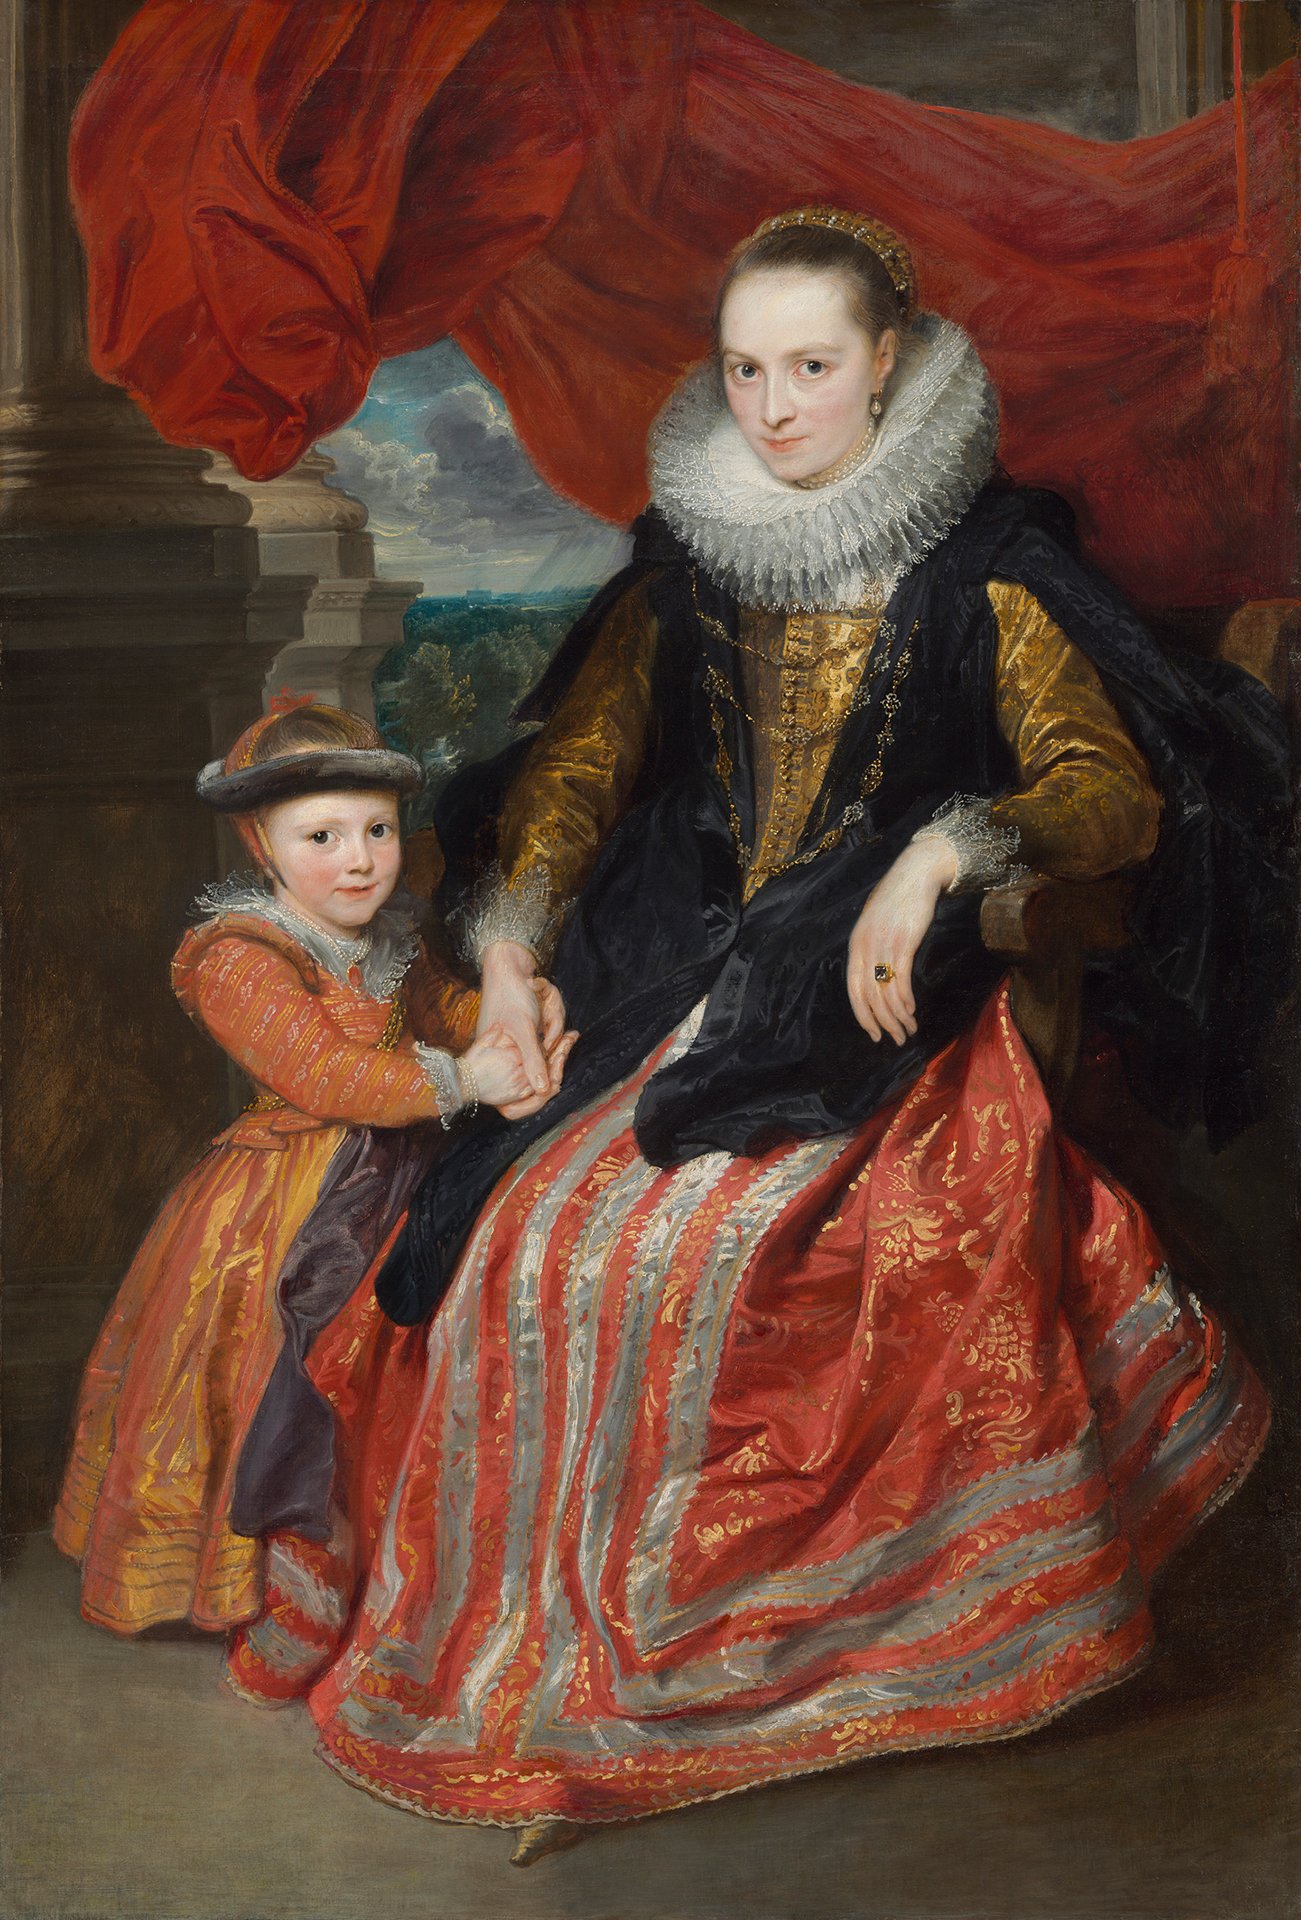 Abbildung des Werks "Susanna Fourment und ihre Tochter" von Anthonis van Dyck aus dem Jahr 1621, das in der Ausstellung "Die Meister-Sammlerin" vom 30. Mai bis 6. September 2015 in der Staatlichen Kunsthalle Karlsruhe zu sehen war.